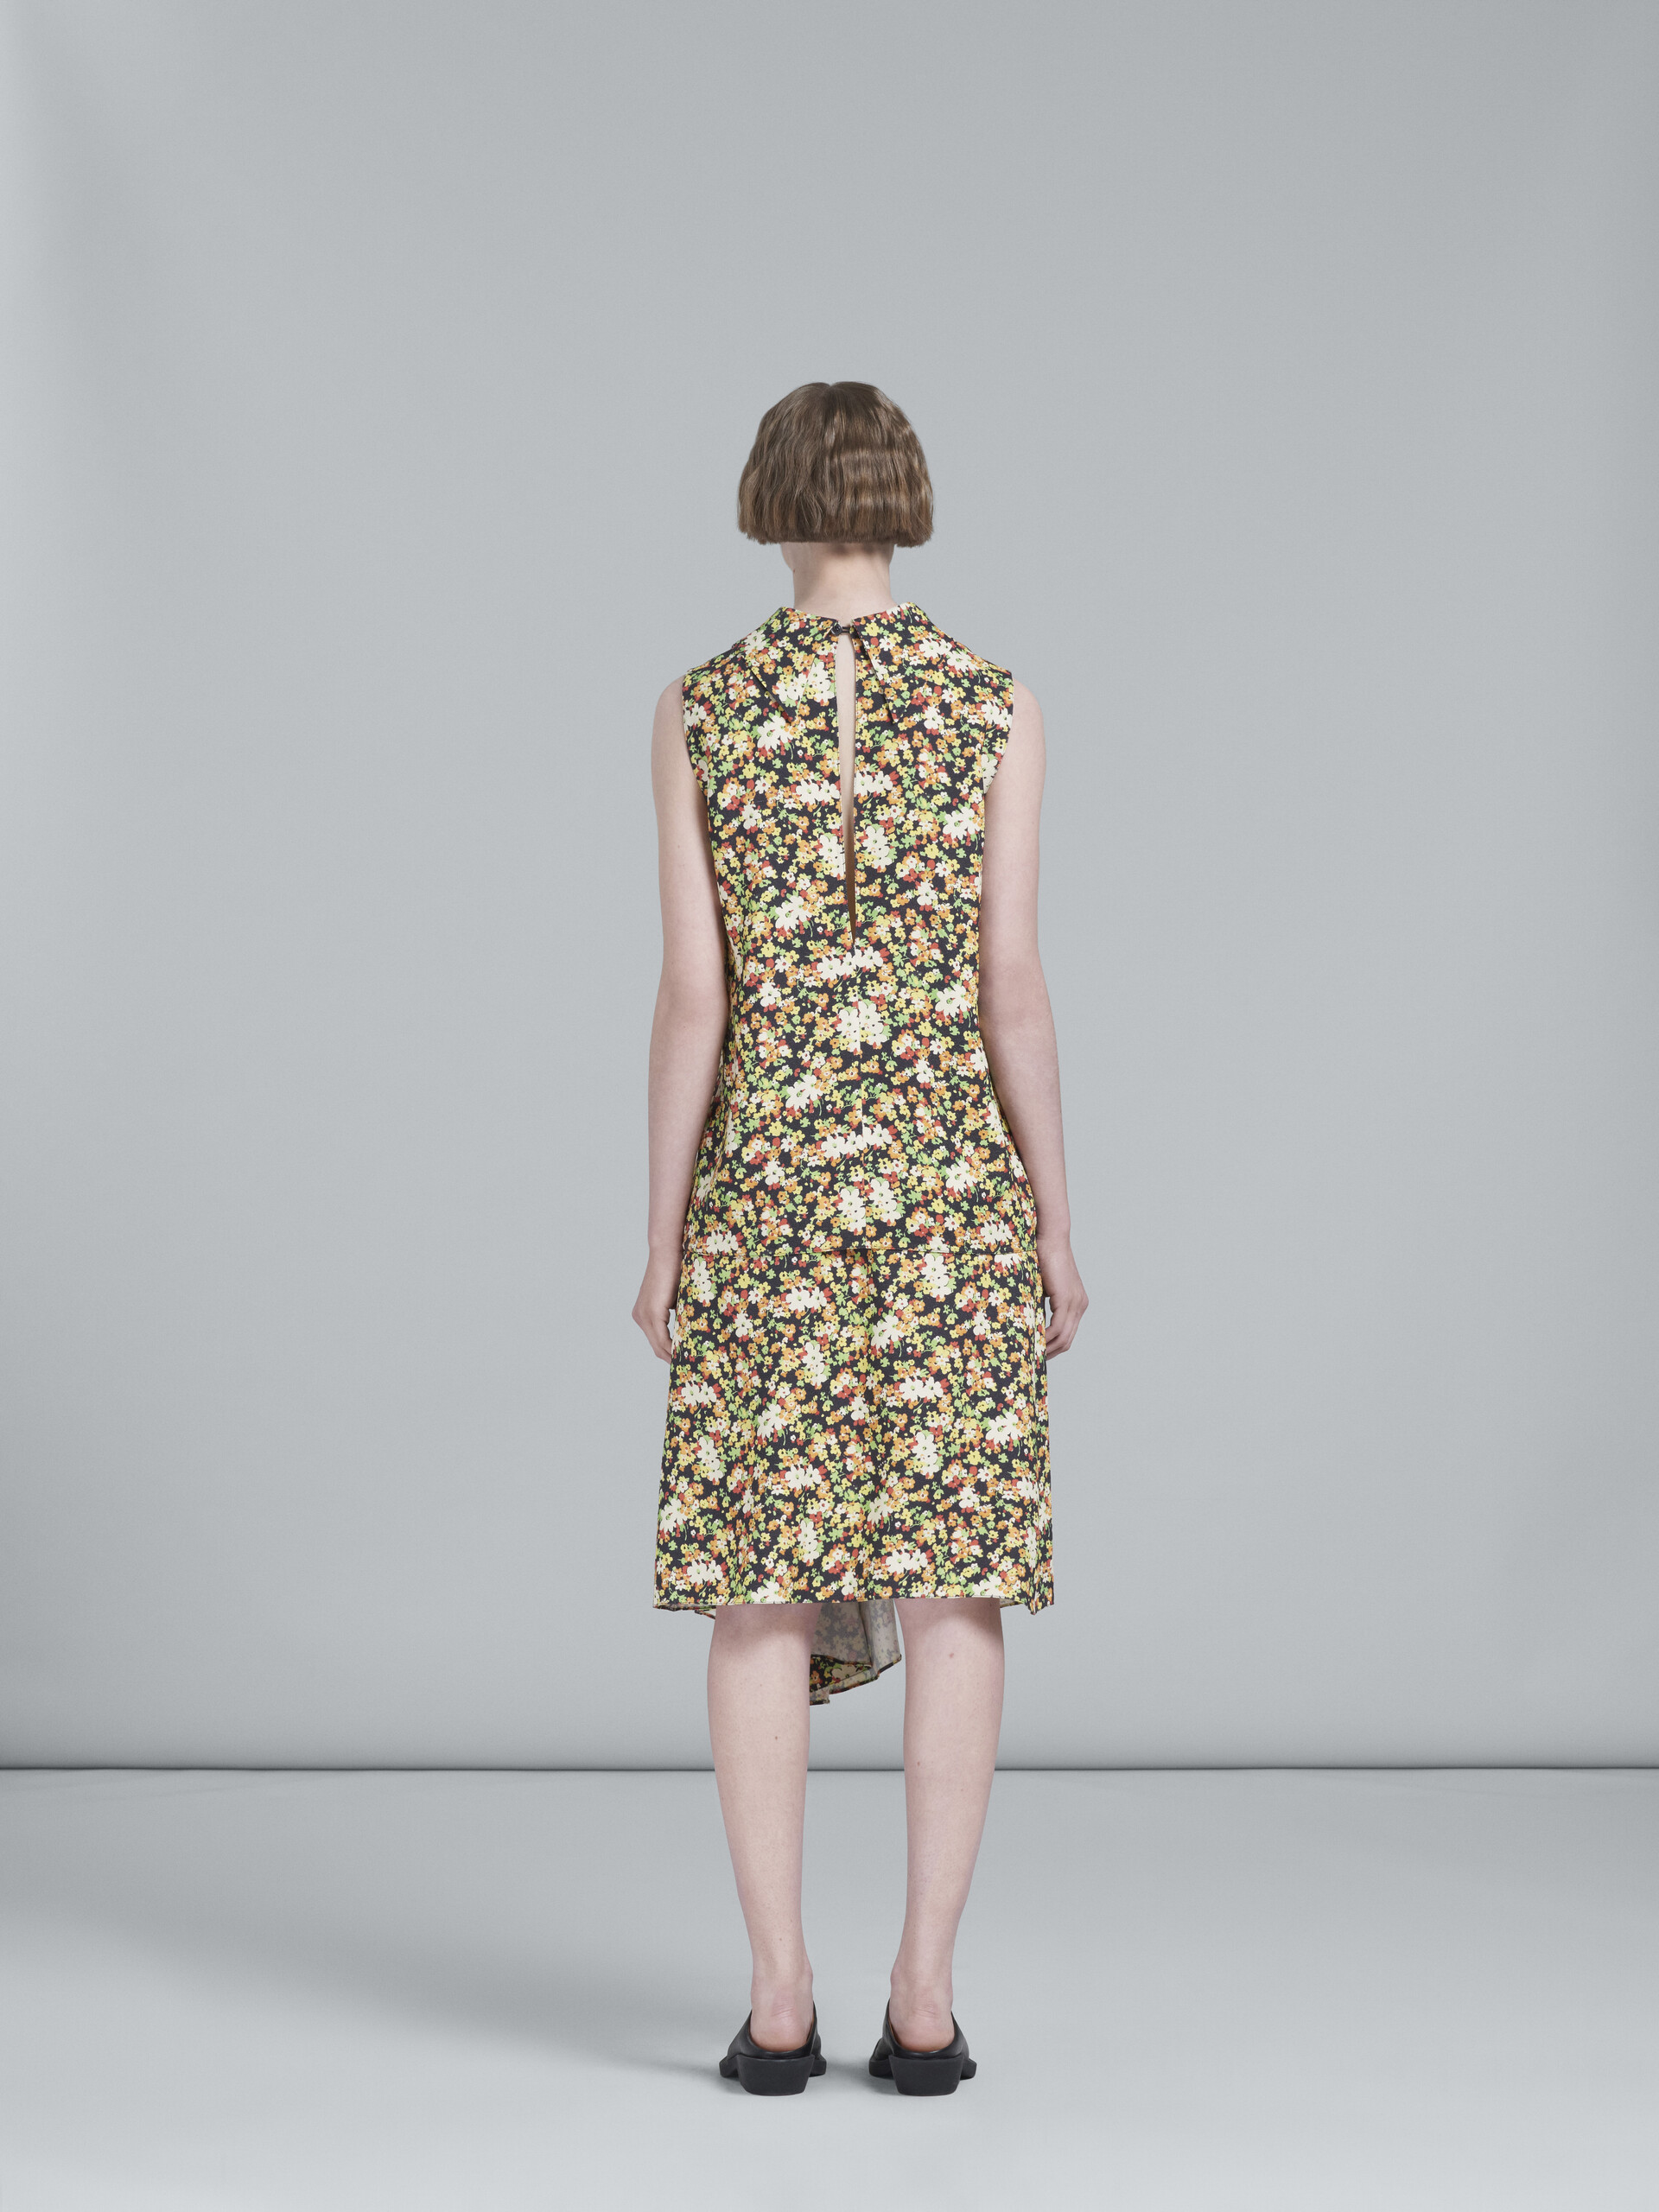 Lovers Prairie print skirt with godet hem - Skirts - Image 3